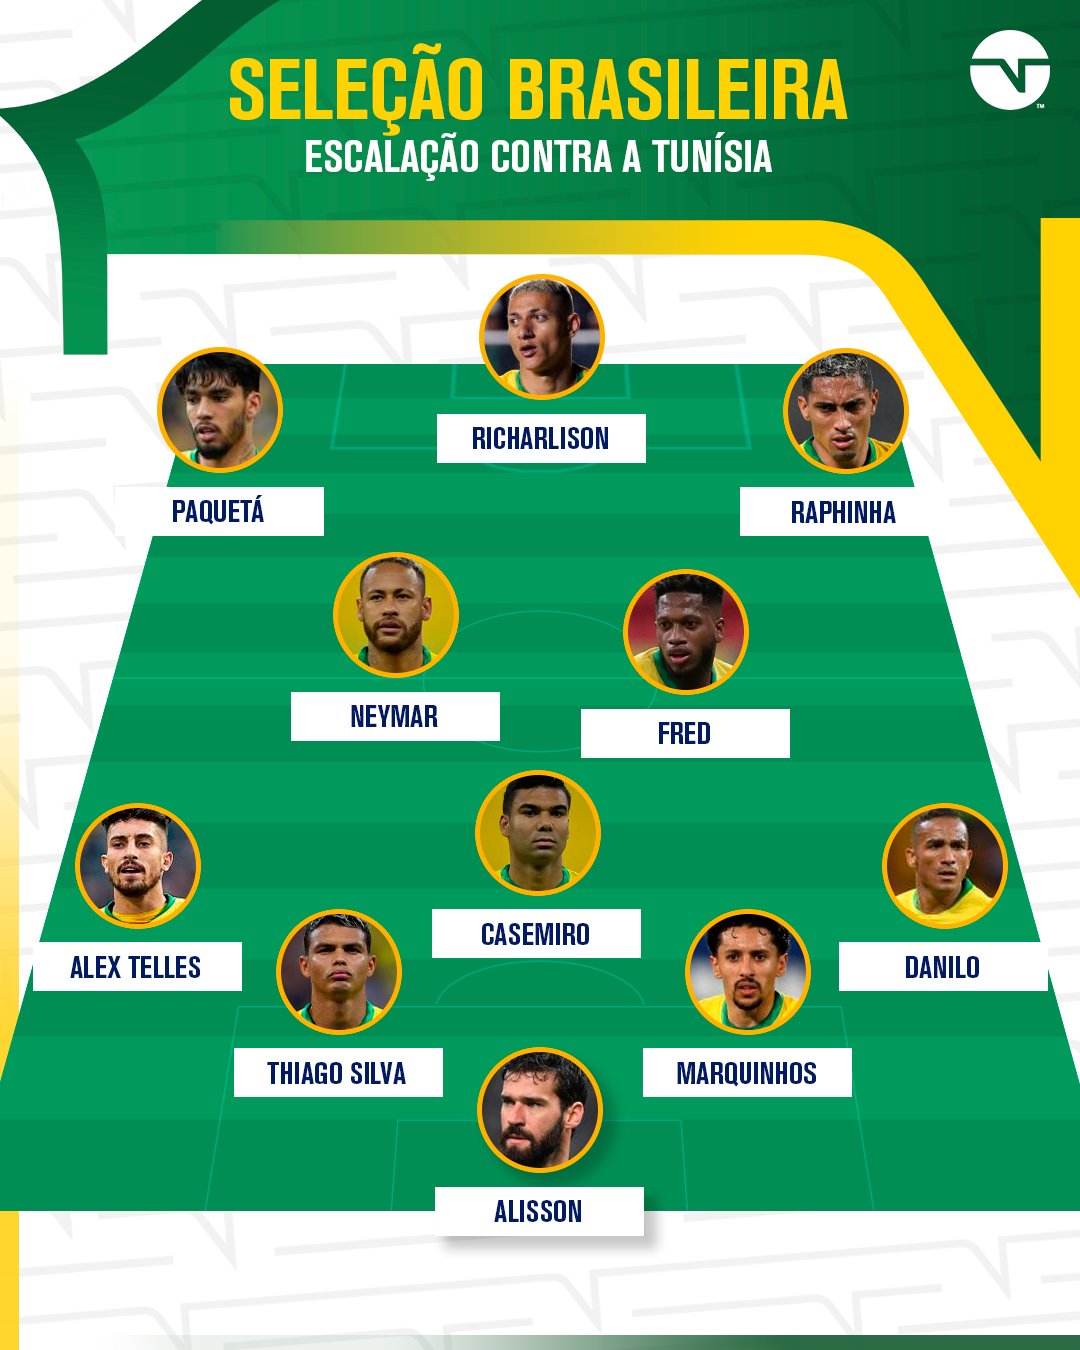 TNT Sports Brasil - E A SELEÇÃO DA FINAL DA COPA DO BRASIL É